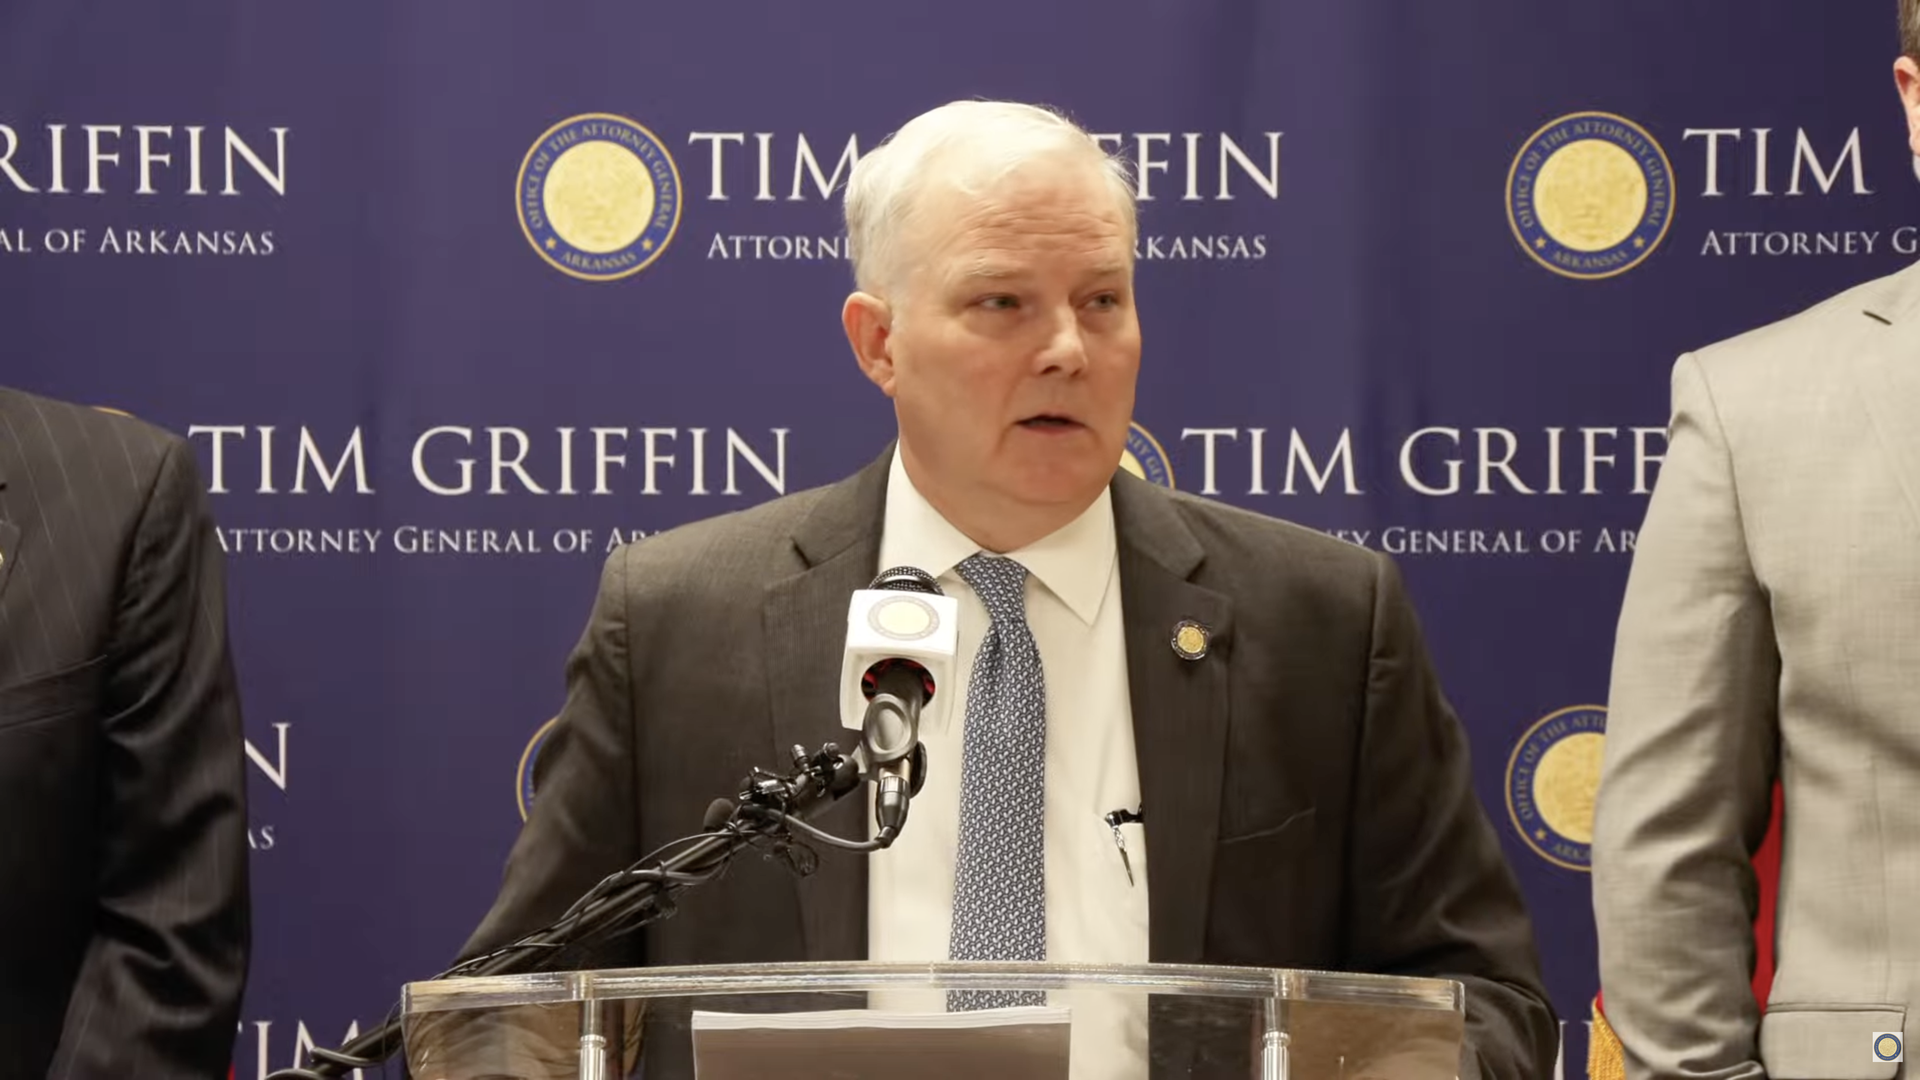 Arkansas' Attorney General Tim Griffin speaks from a podium.